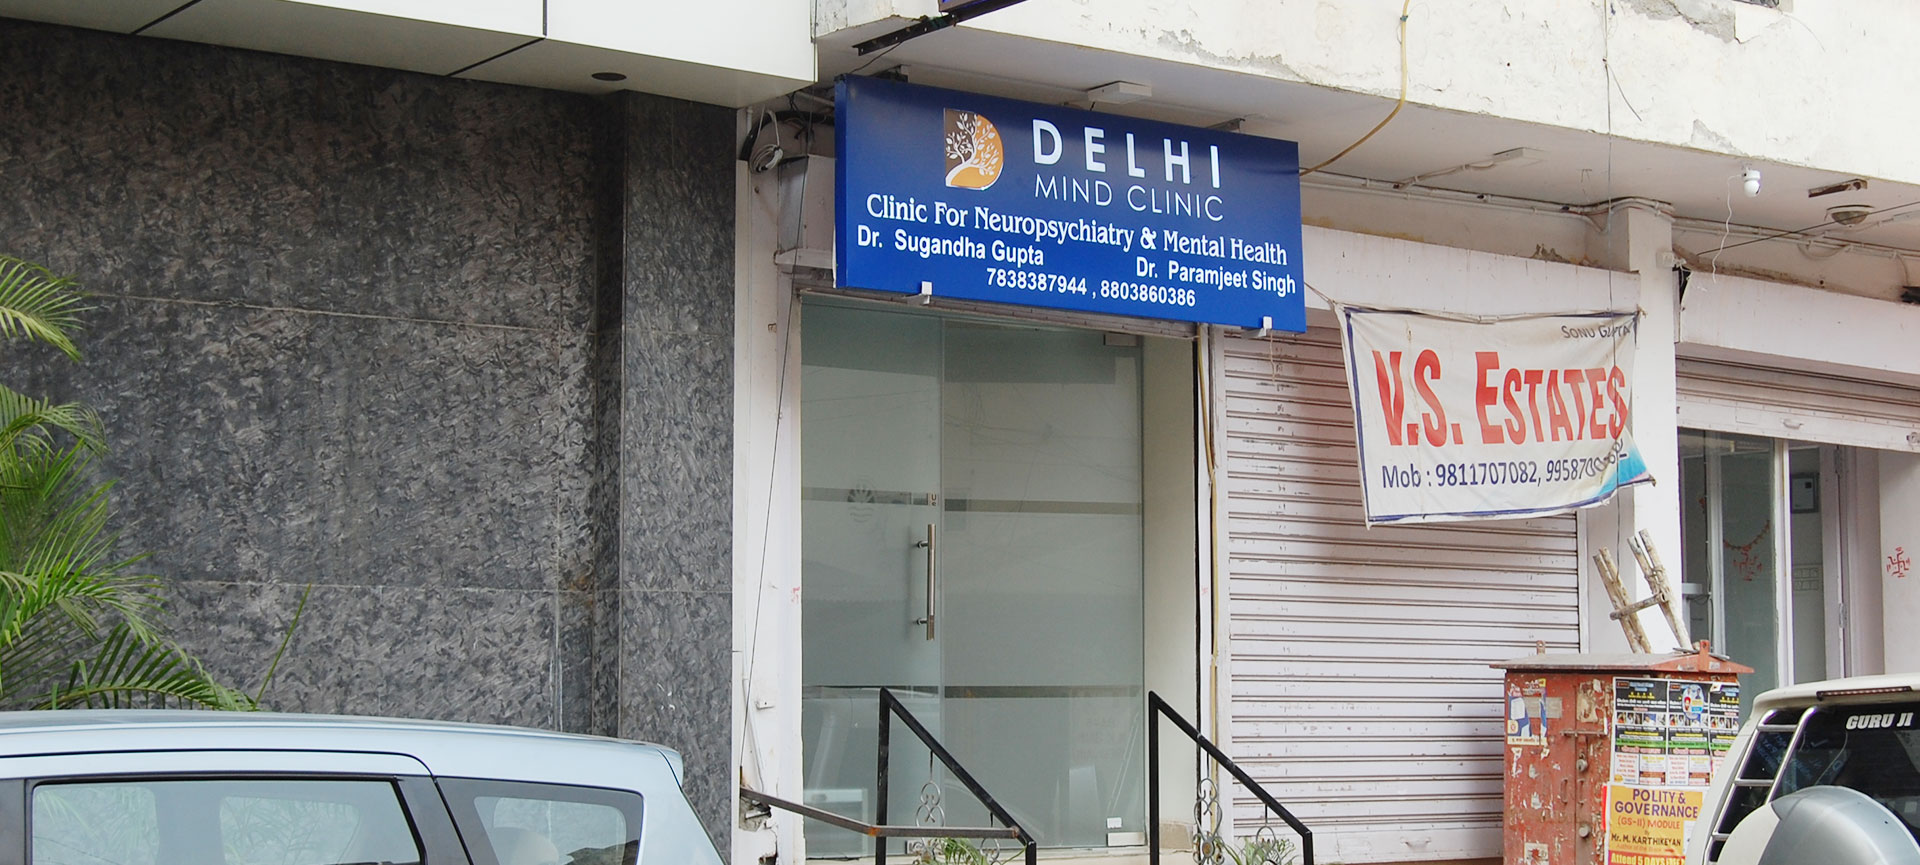 DelhimindClinic Front Facing